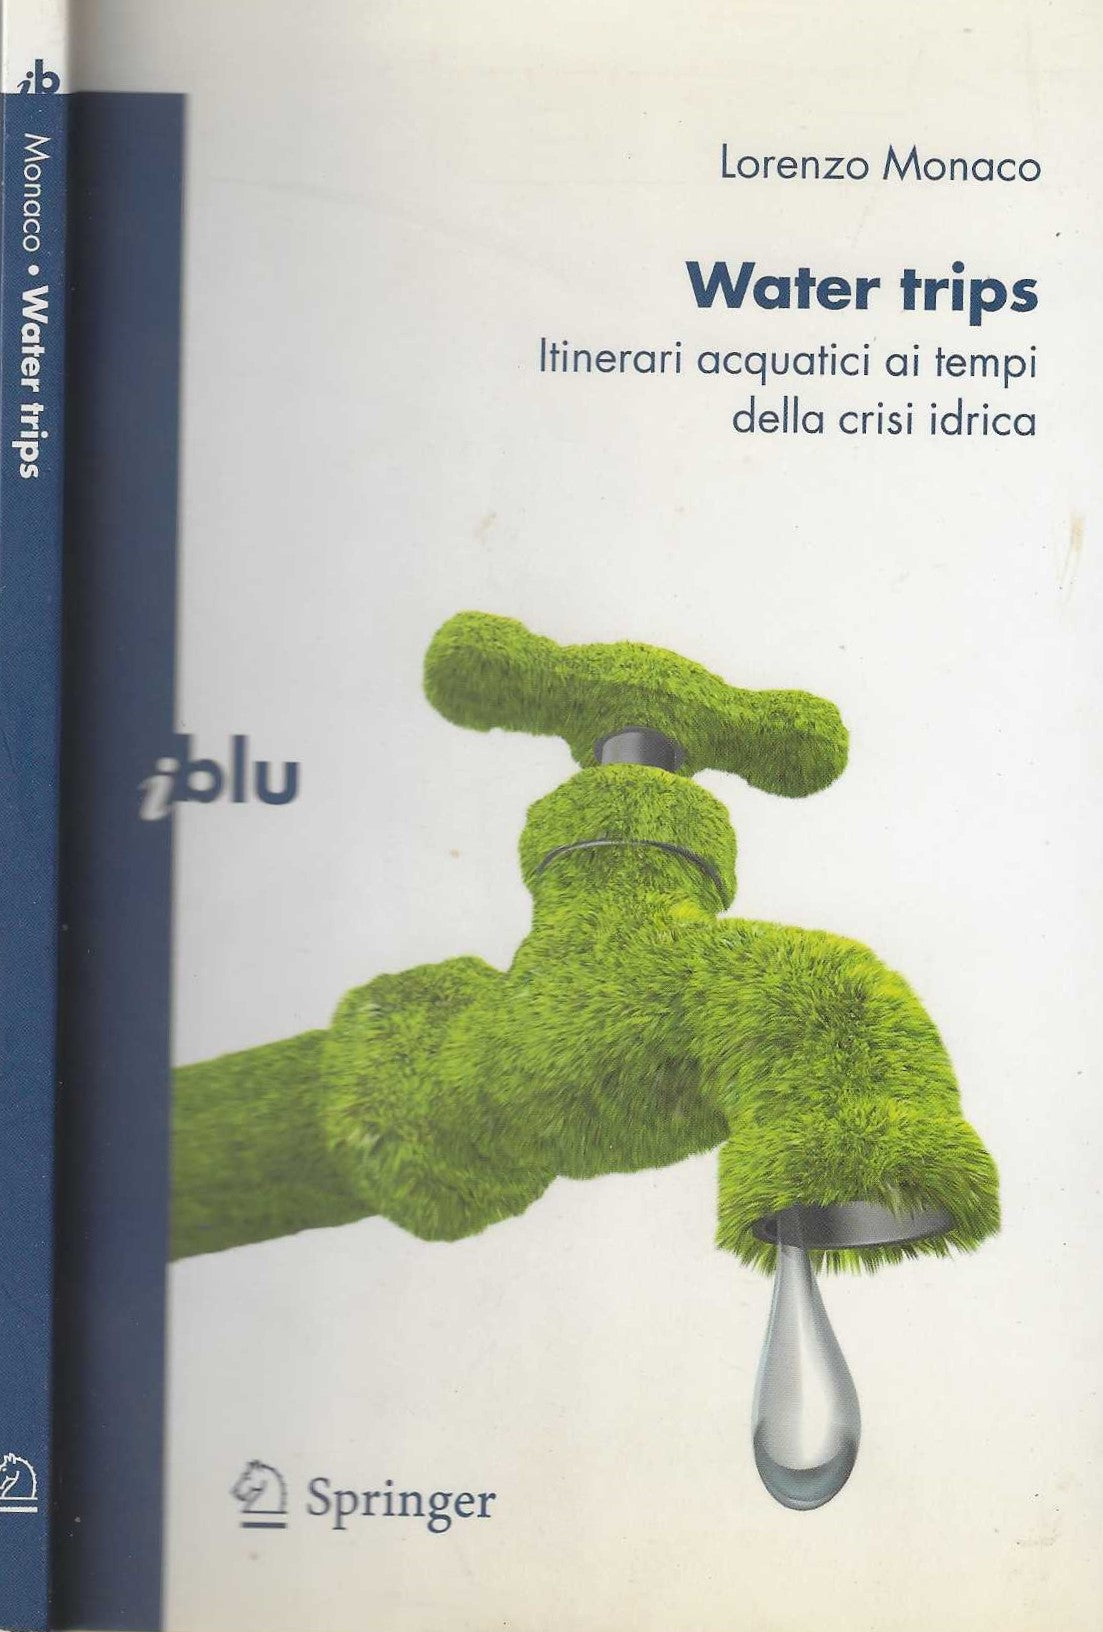 Water trips: Itinerari acquatici ai tempi della crisi idrica: Itinerari Acquatici Al Tempi Della Crisi Idrica